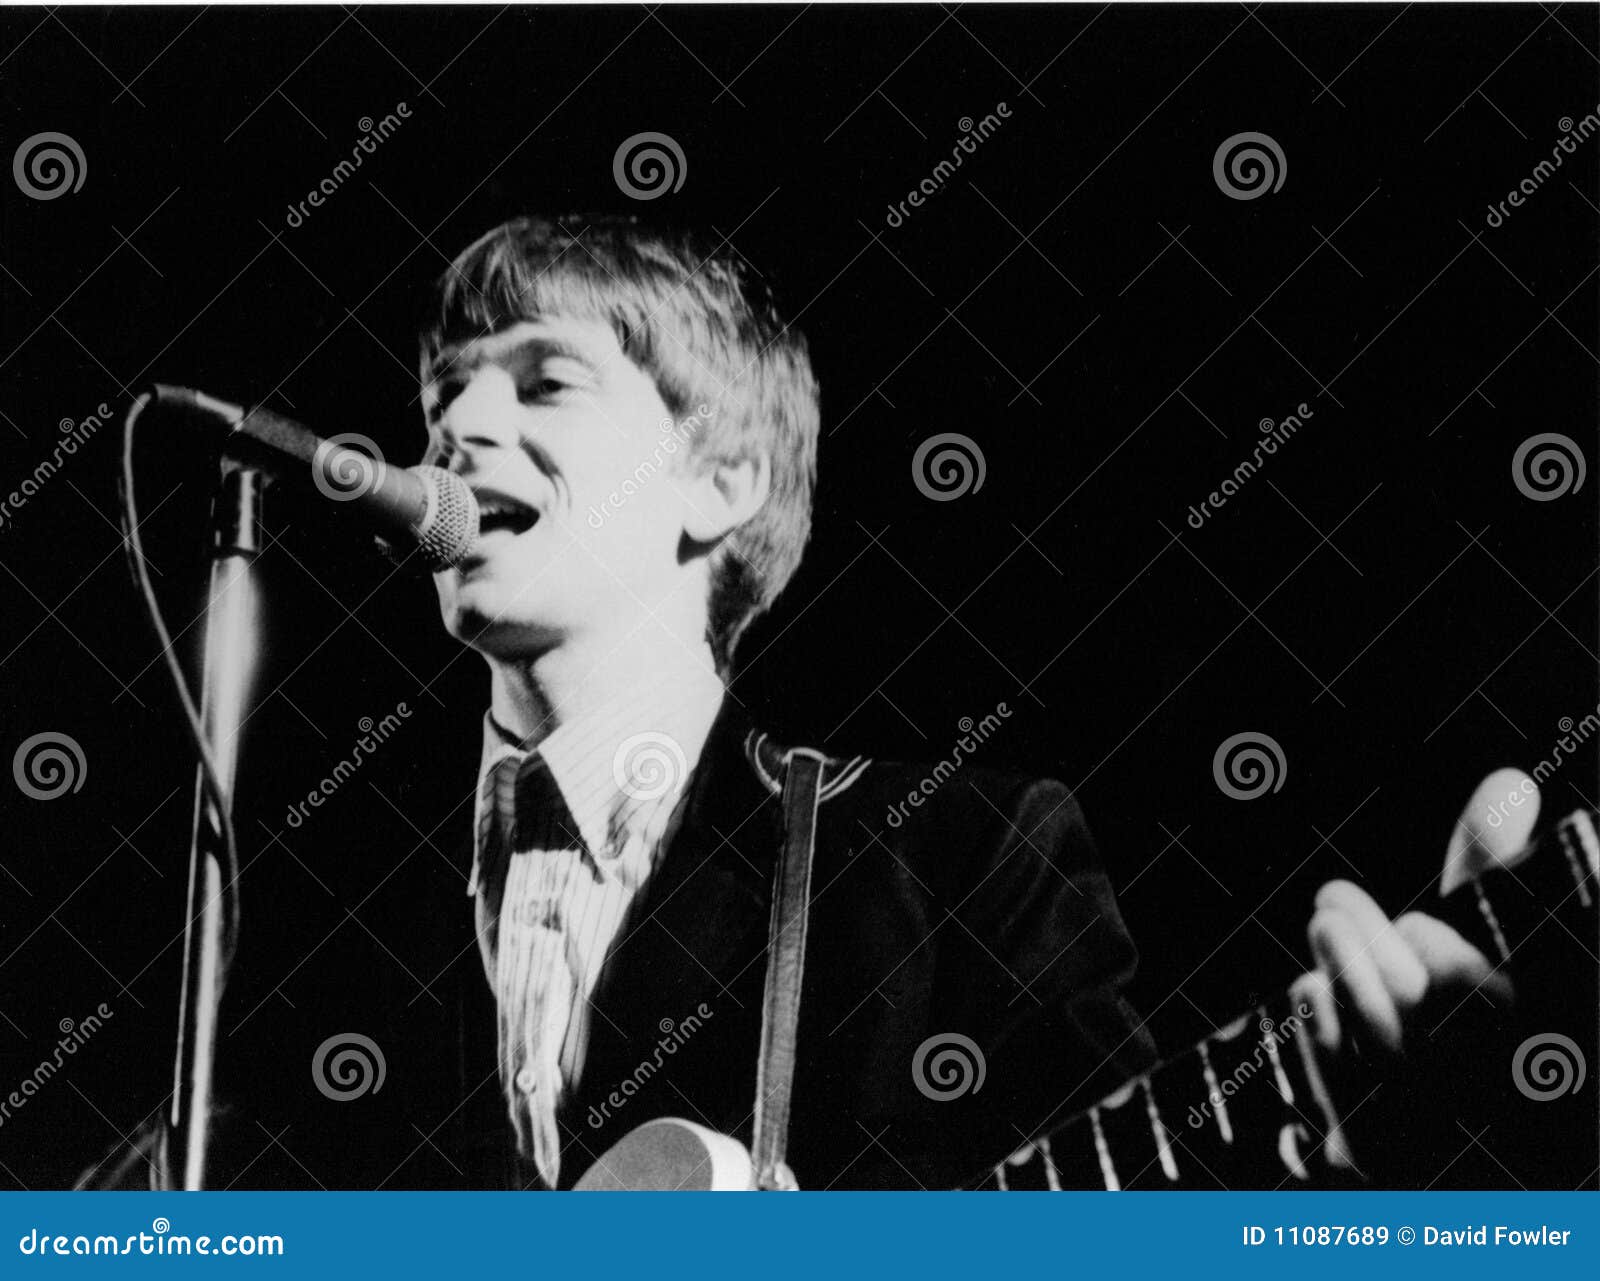 Chris wilson. гитарист июнь 4 1978 groovies francisco flamin Англии культа croydon chris полосы в реальном маштабе времени выполняет этап wilson san утеса